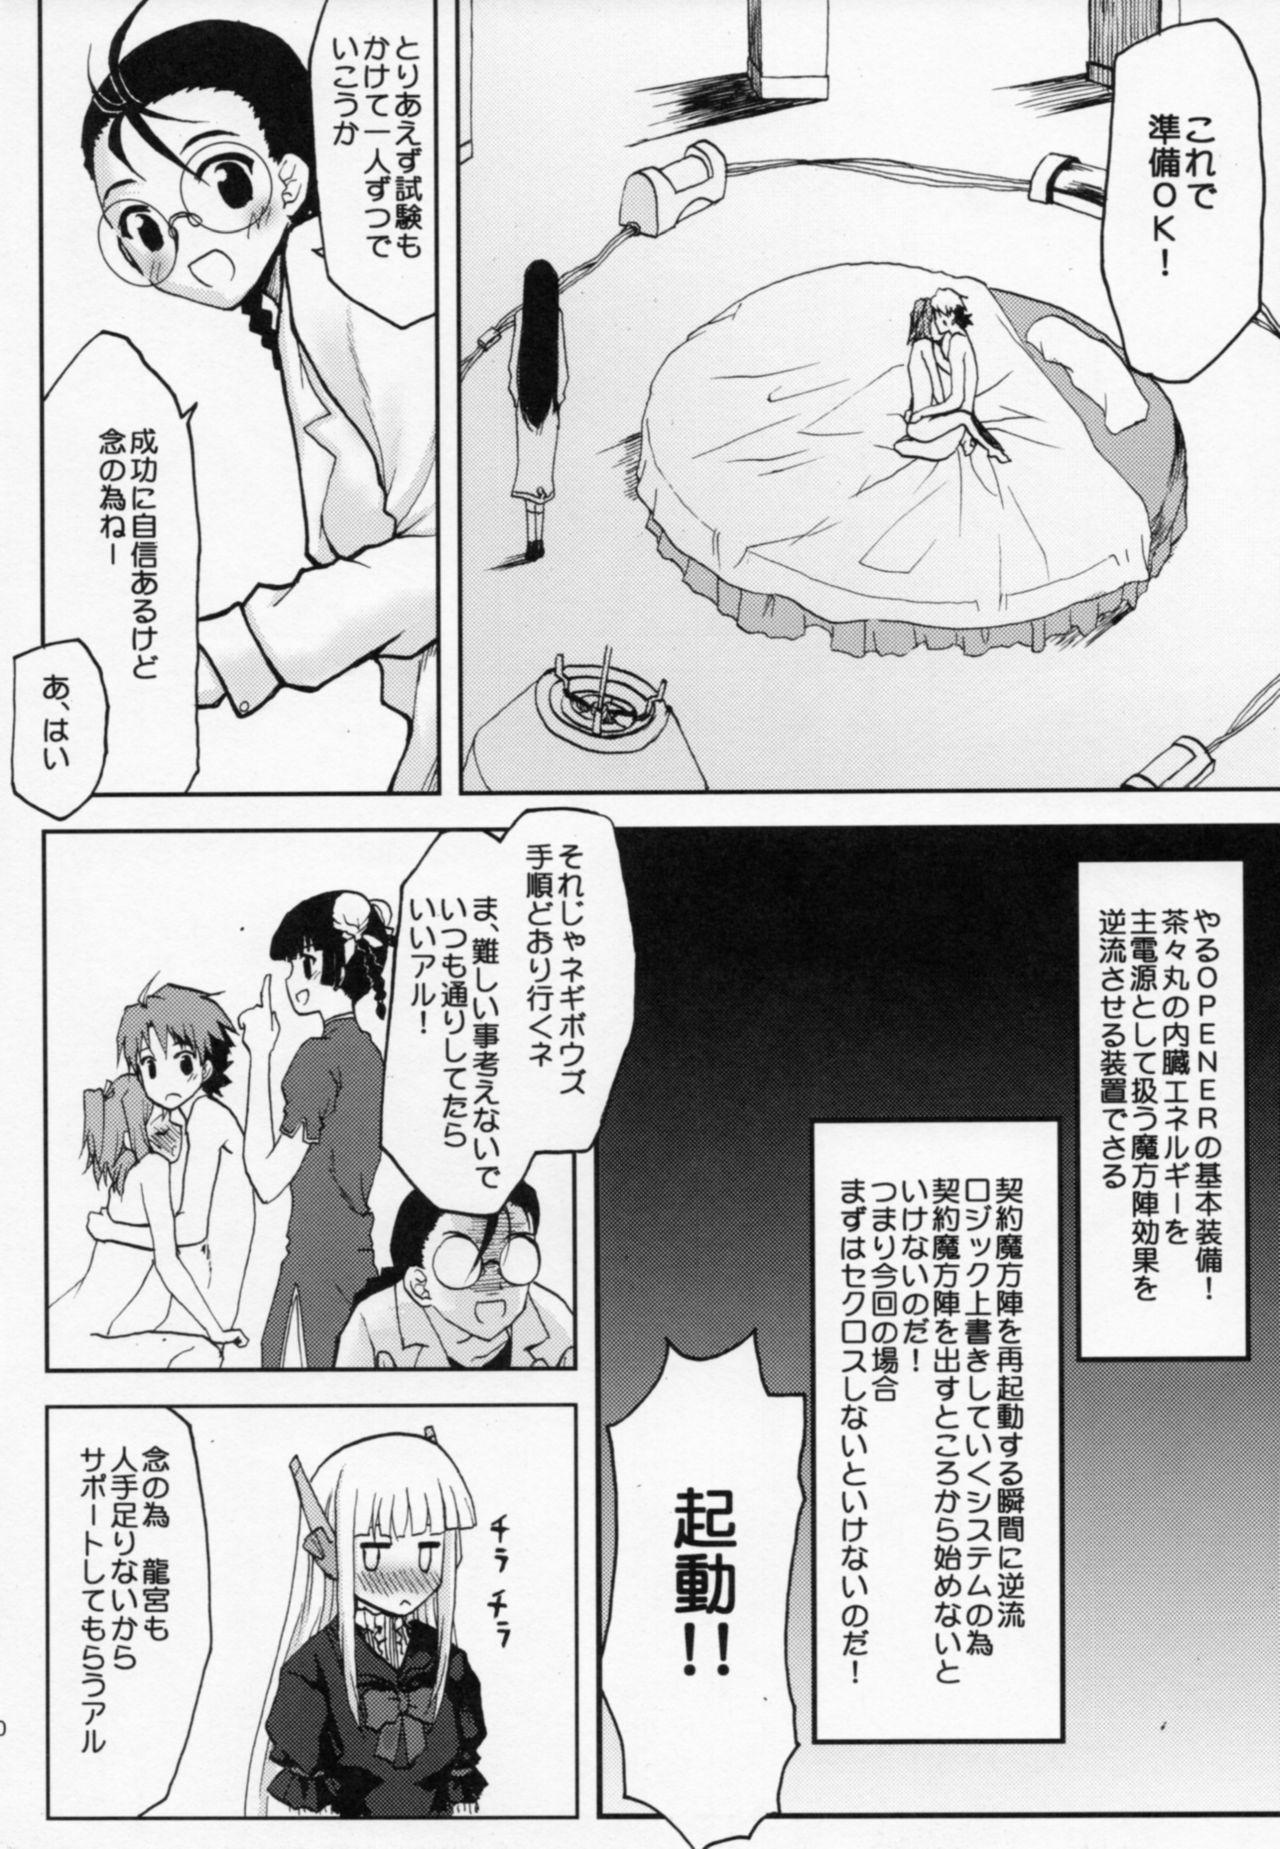 Naughty .negi//Akushou Heni vol.2 - Mahou sensei negima Cutie - Page 11